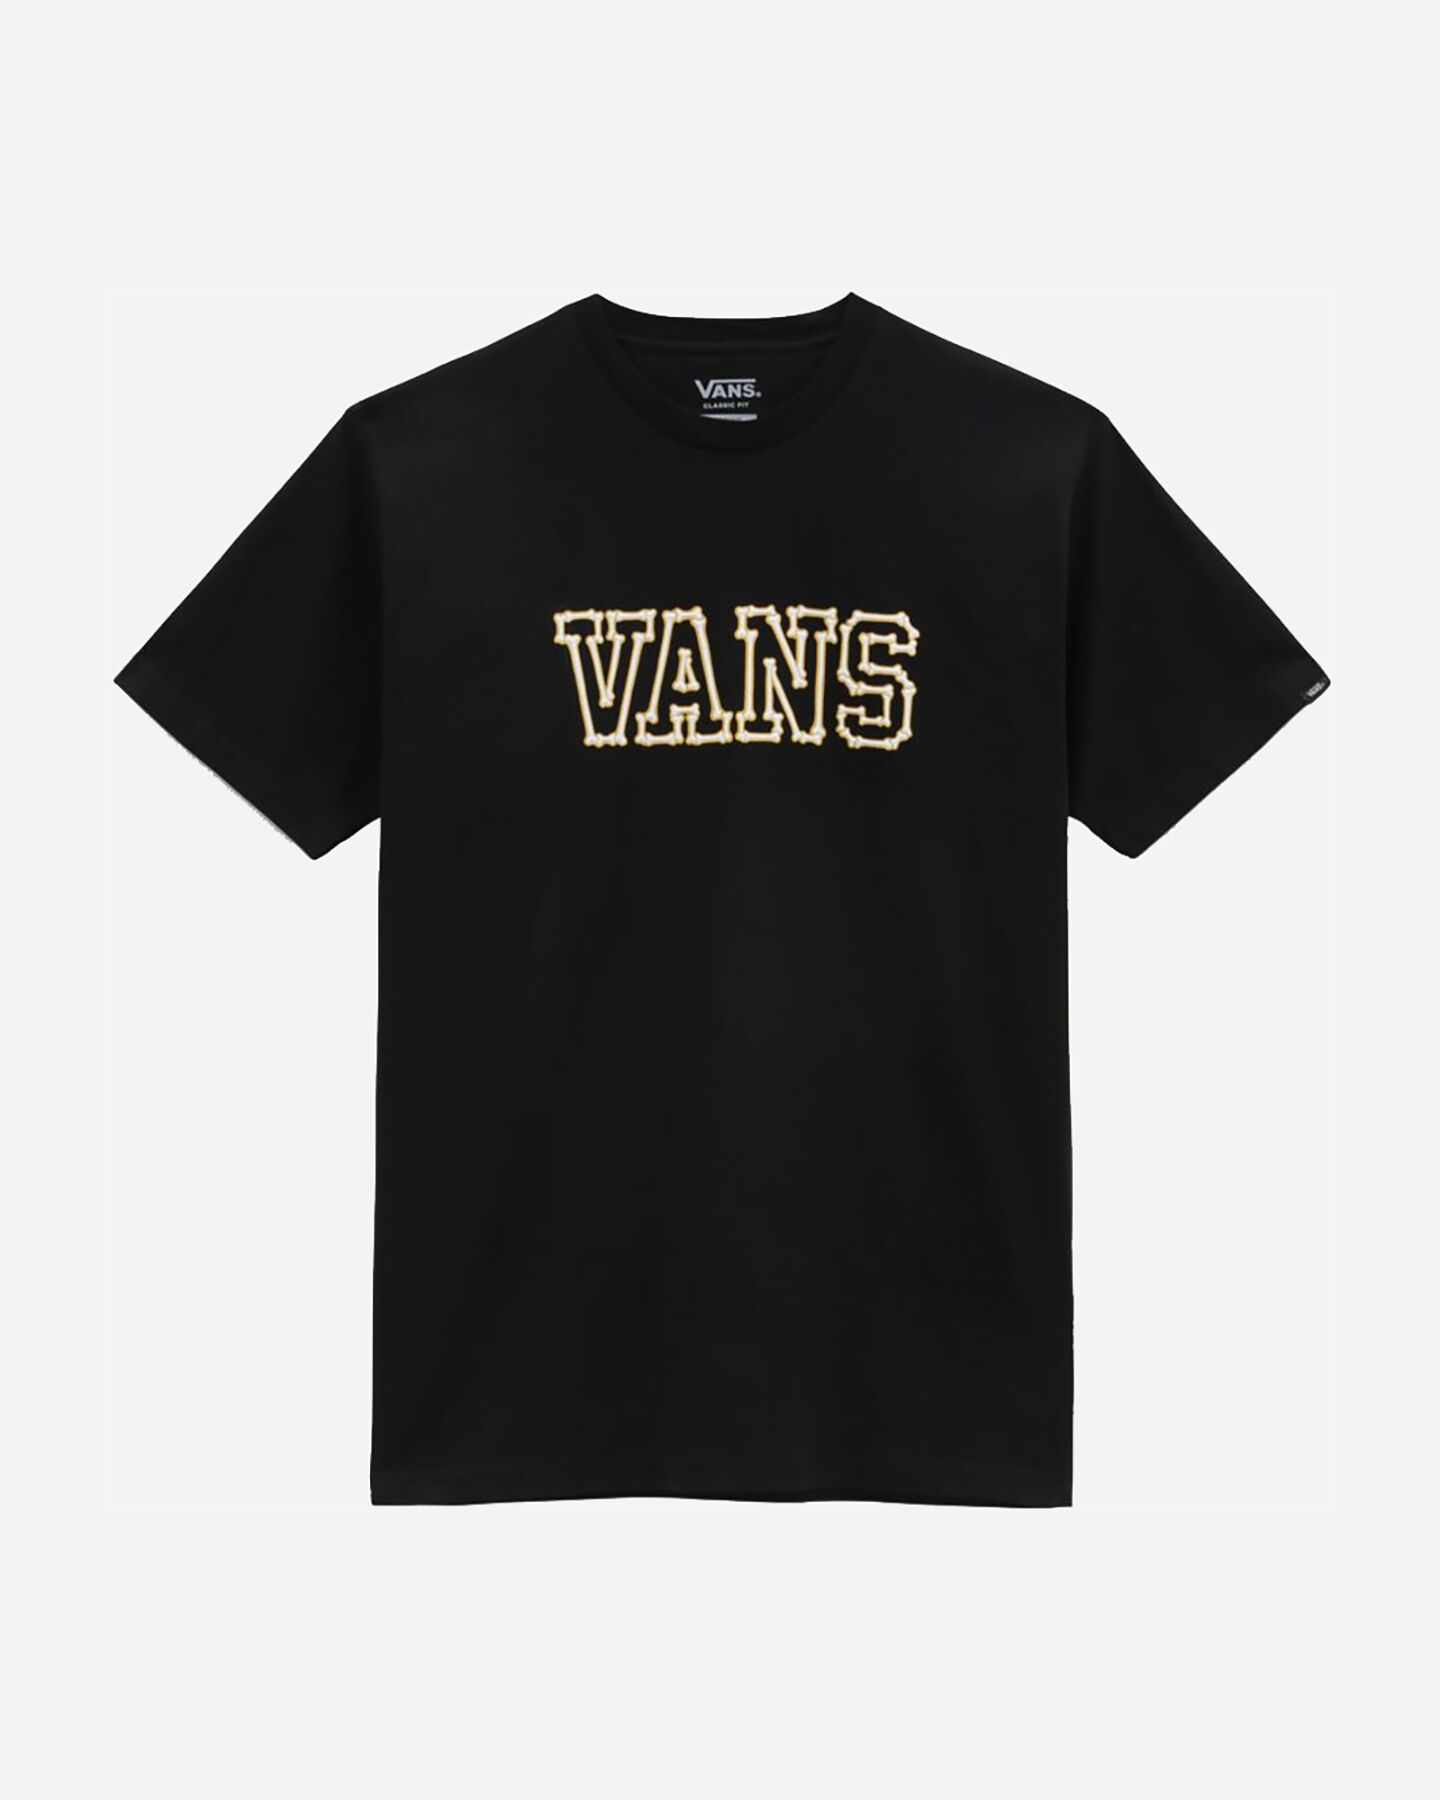  T-Shirt VANS BONES M S5555265|BLK|S scatto 3